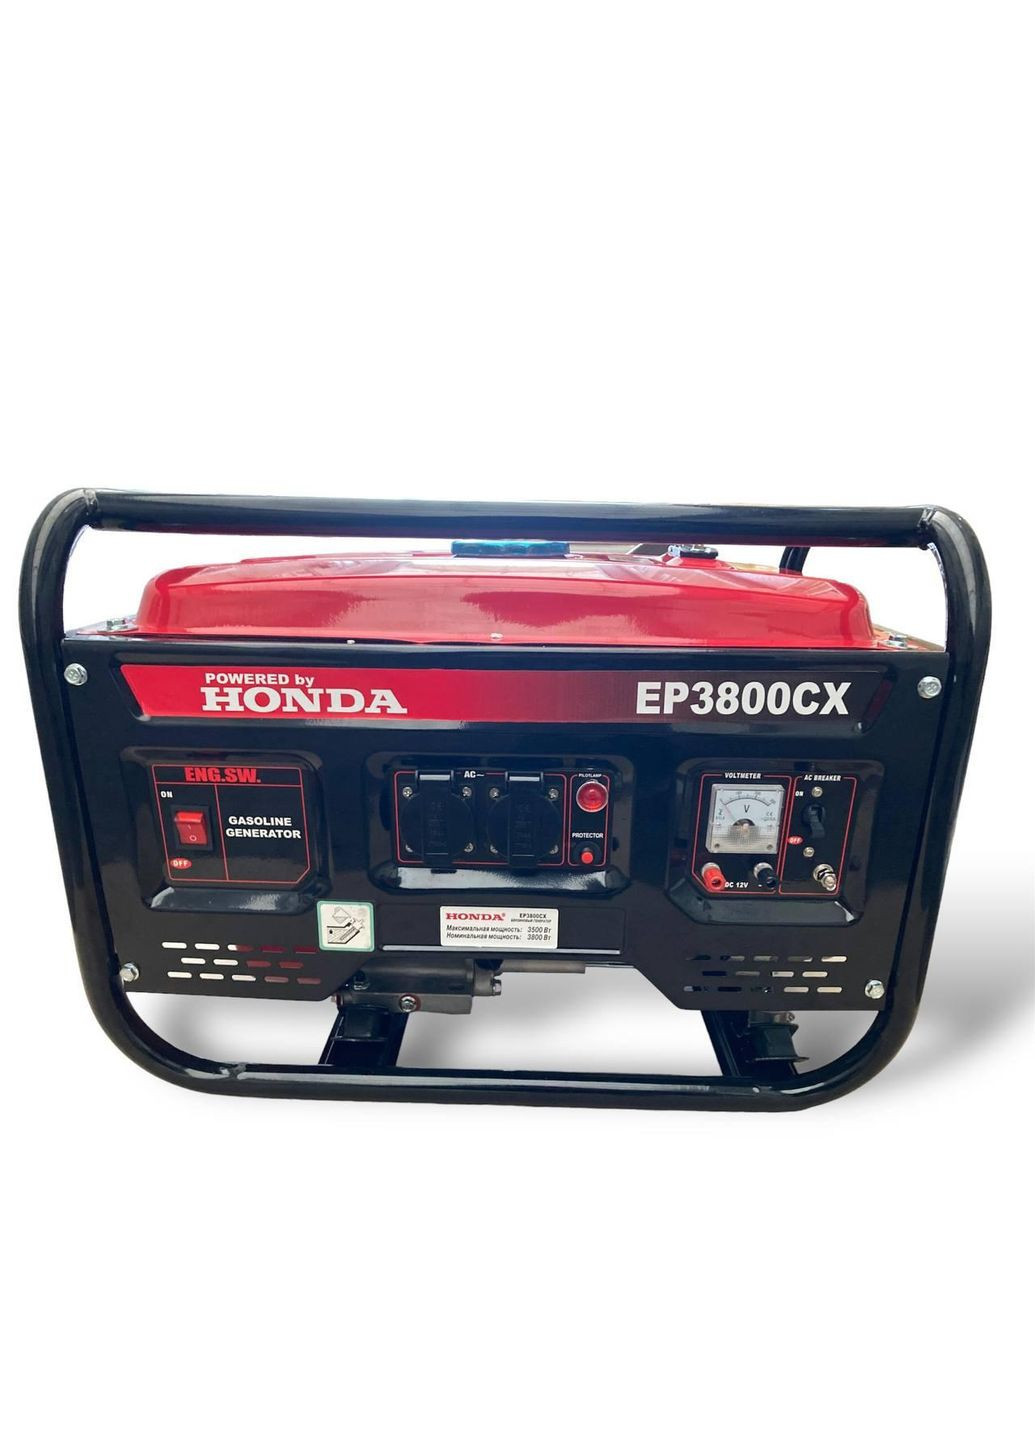 Генератор бензиновый EP3800CX 3.1 кВа(кВт)GX 240 ручной стартер 4-тактный Honda (261855678)